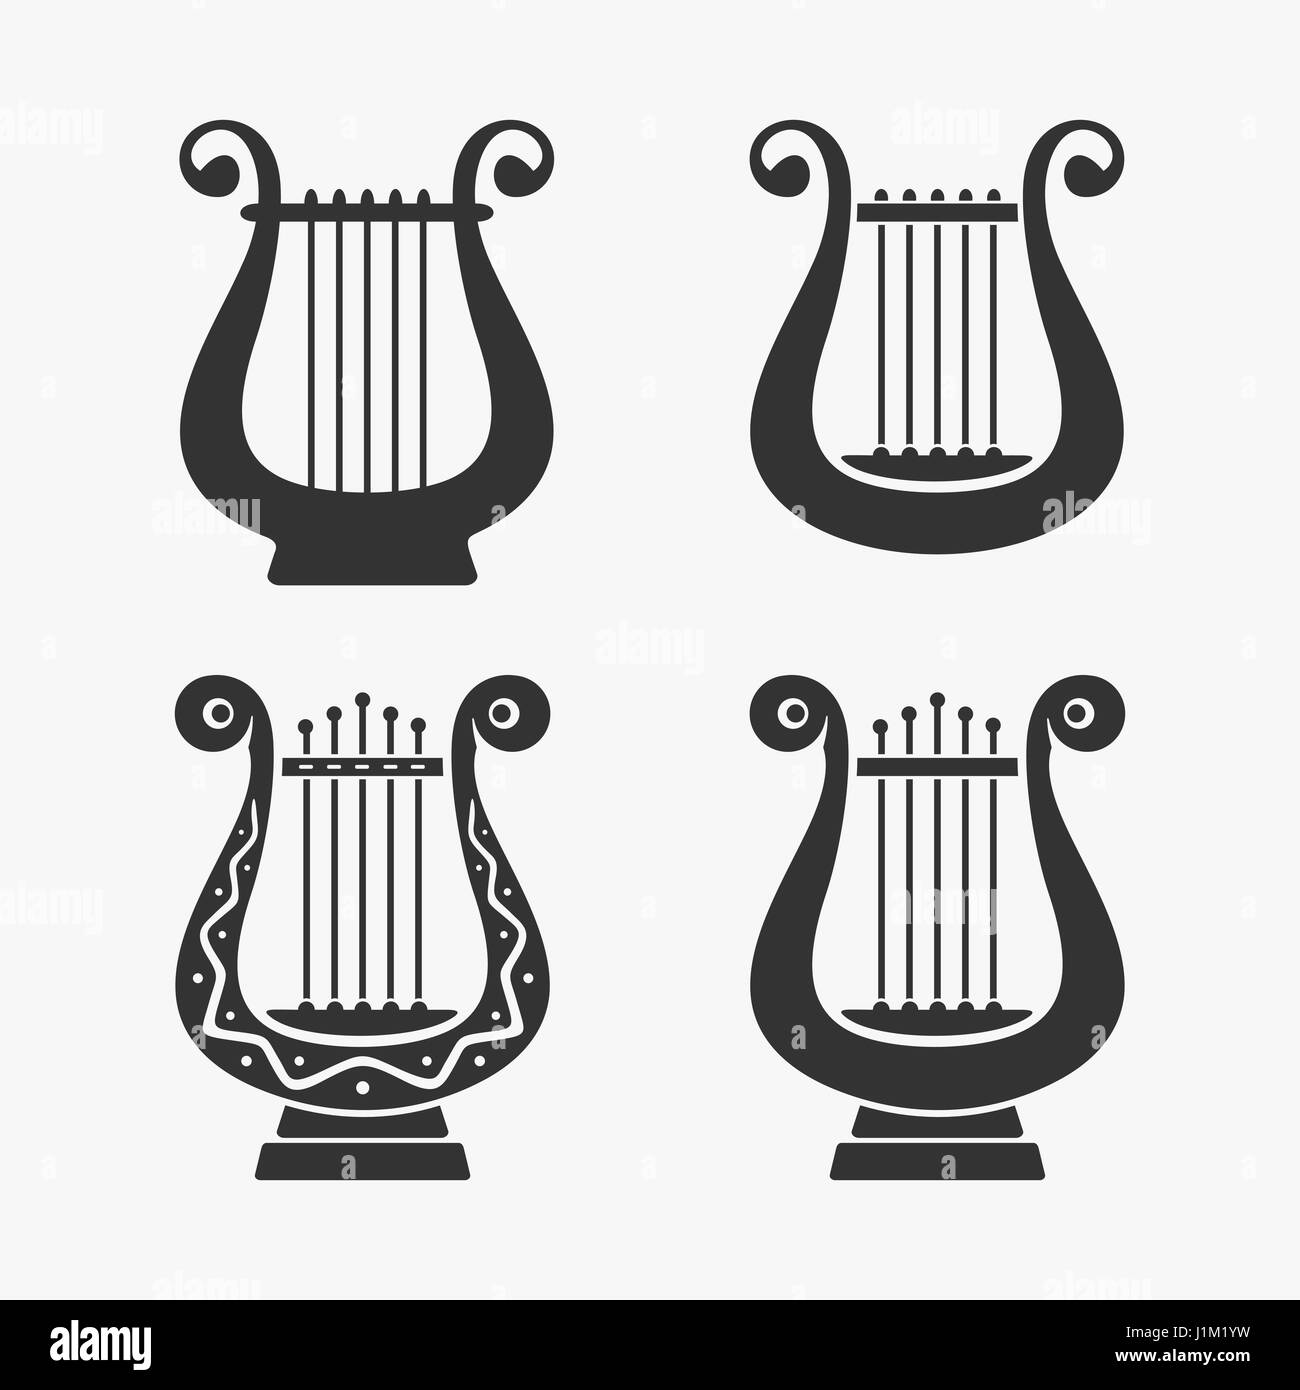 Greek Harp Symbol Vector Illustration Stock Vector